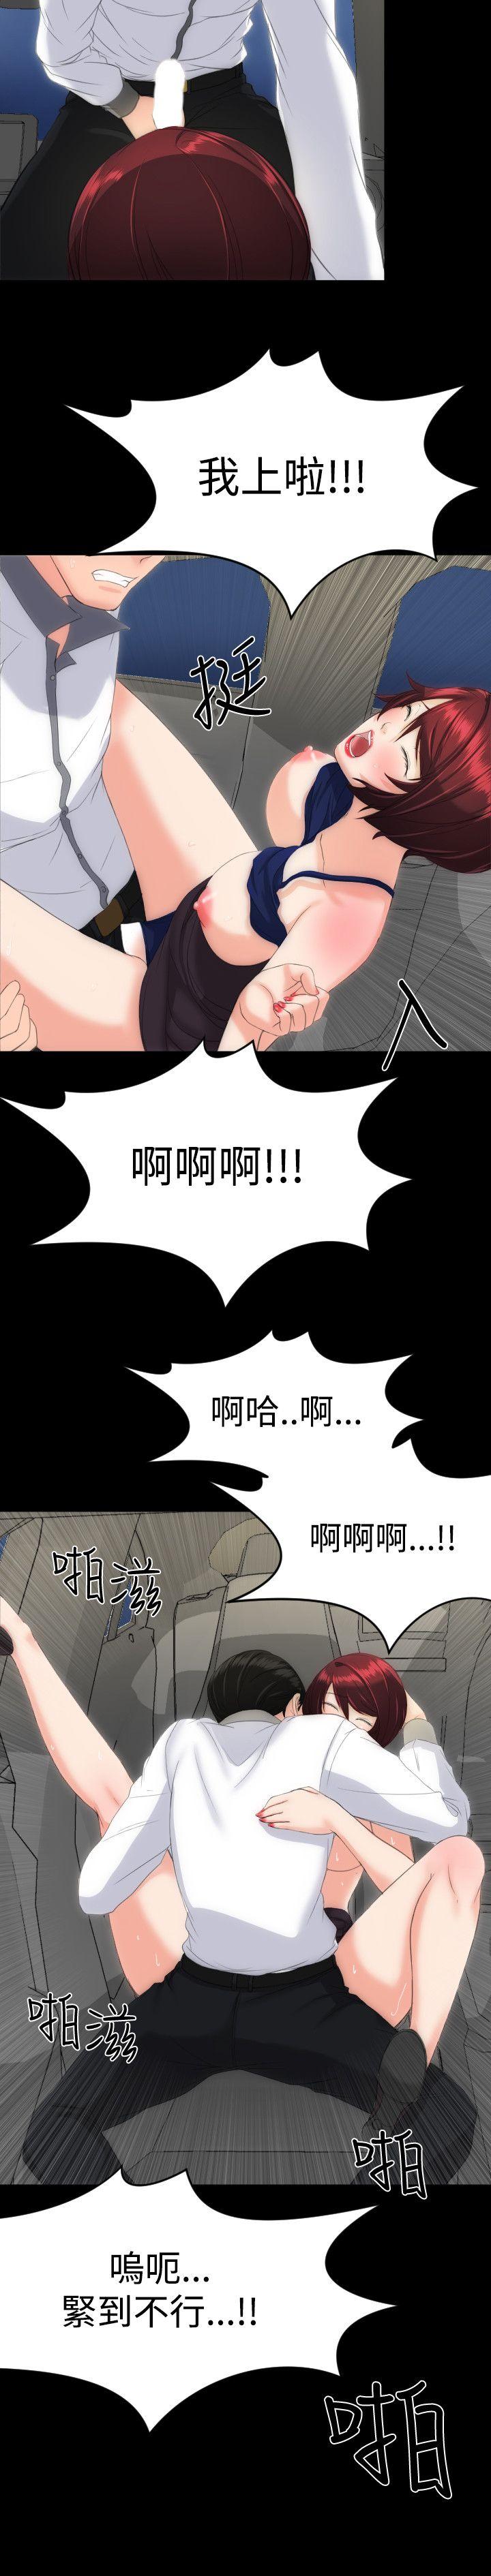 韩国污漫画 成人的滋味 第14话 16